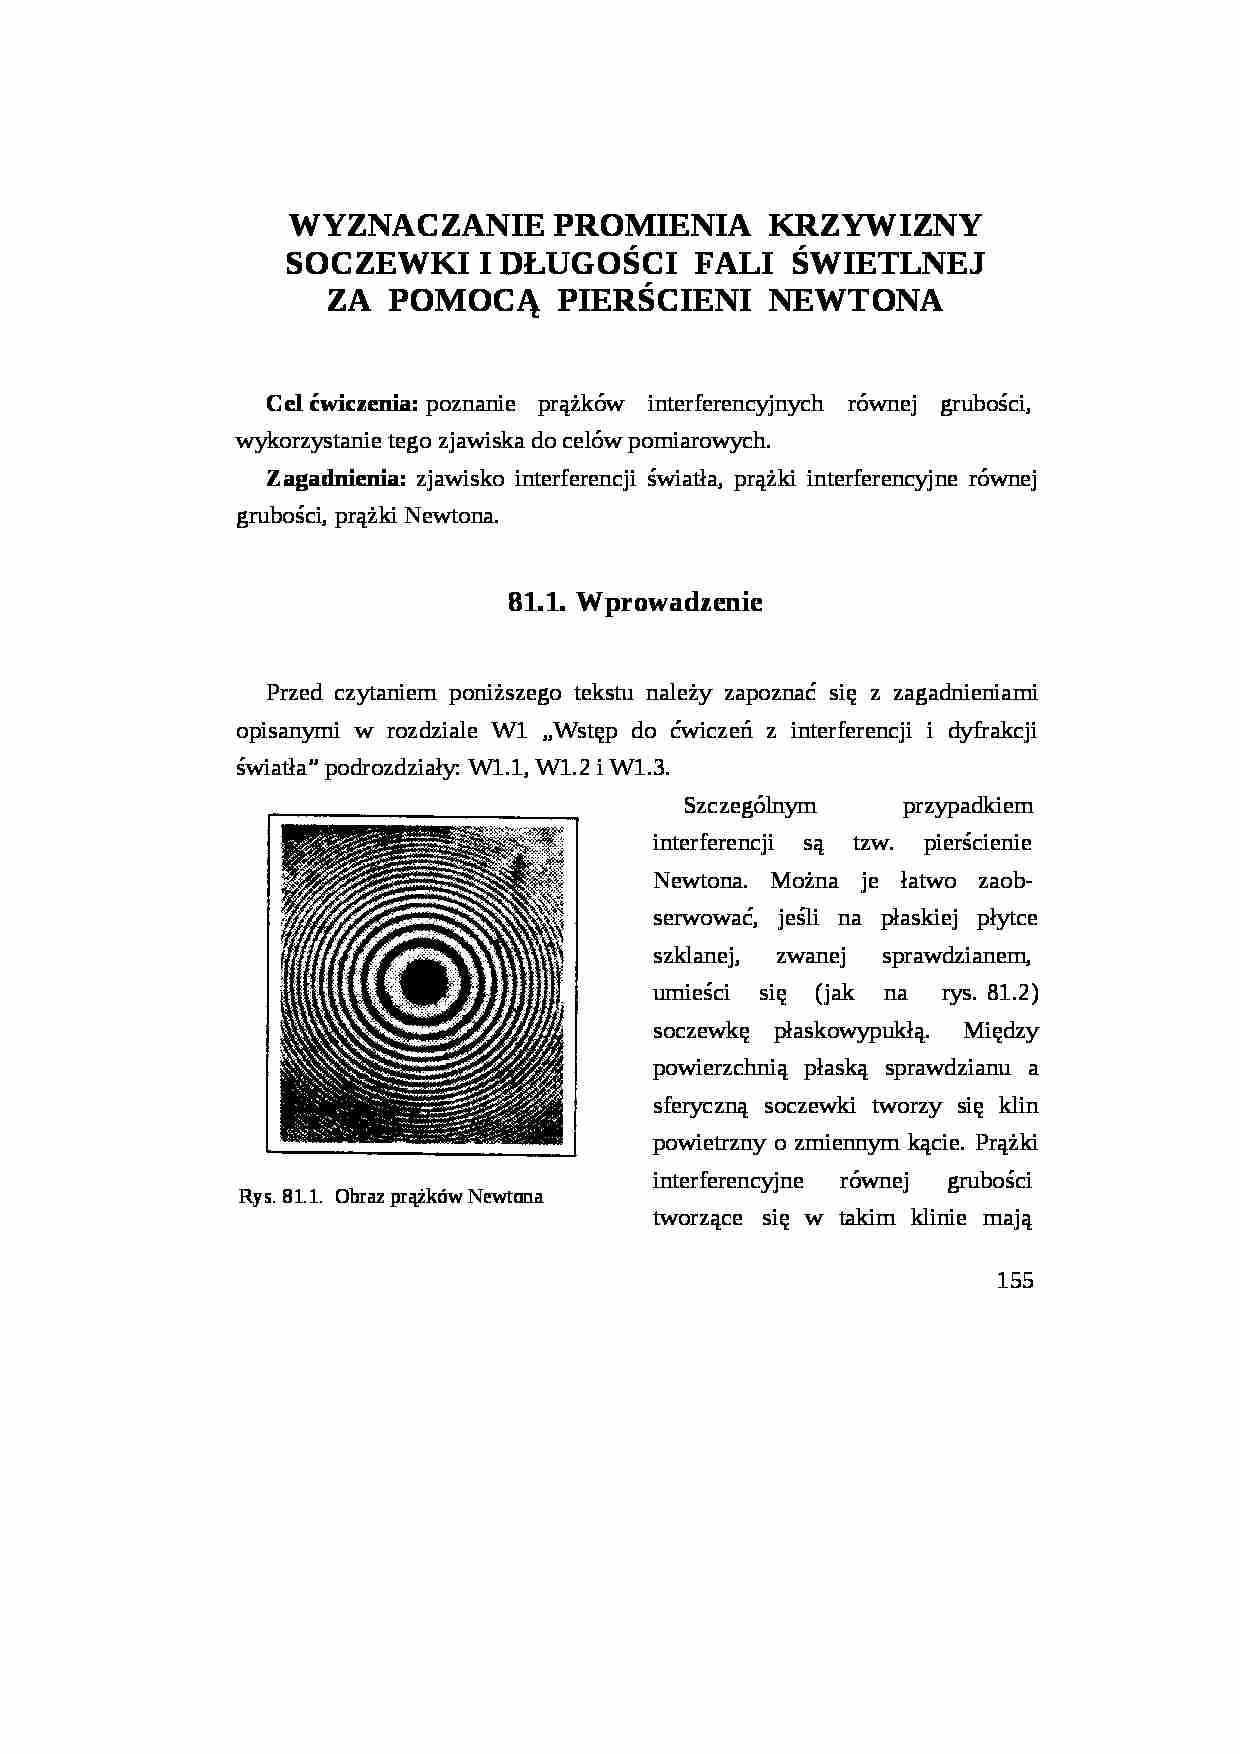 Wyznaczanie promienia krzywizny soczewki za pomocą pierścienia Newtona-opracowanie - strona 1